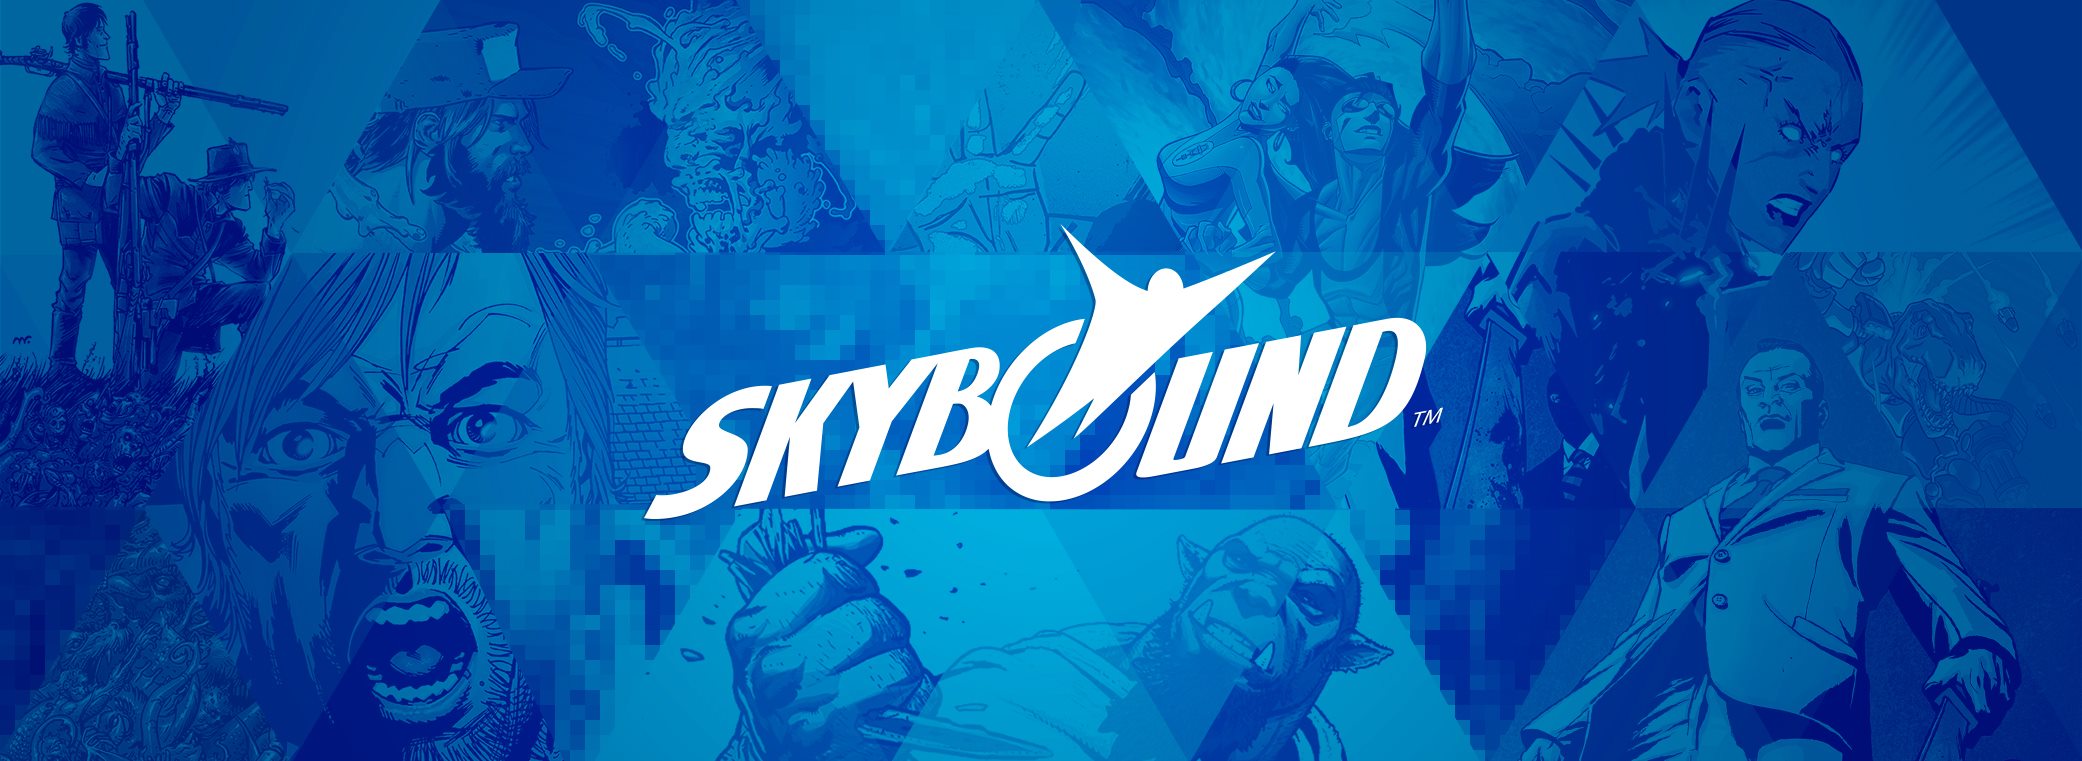 Skybound transformers. Скайбаунд. Skybound Entertainment. Skybound games. Skybound Entertainment проекты.